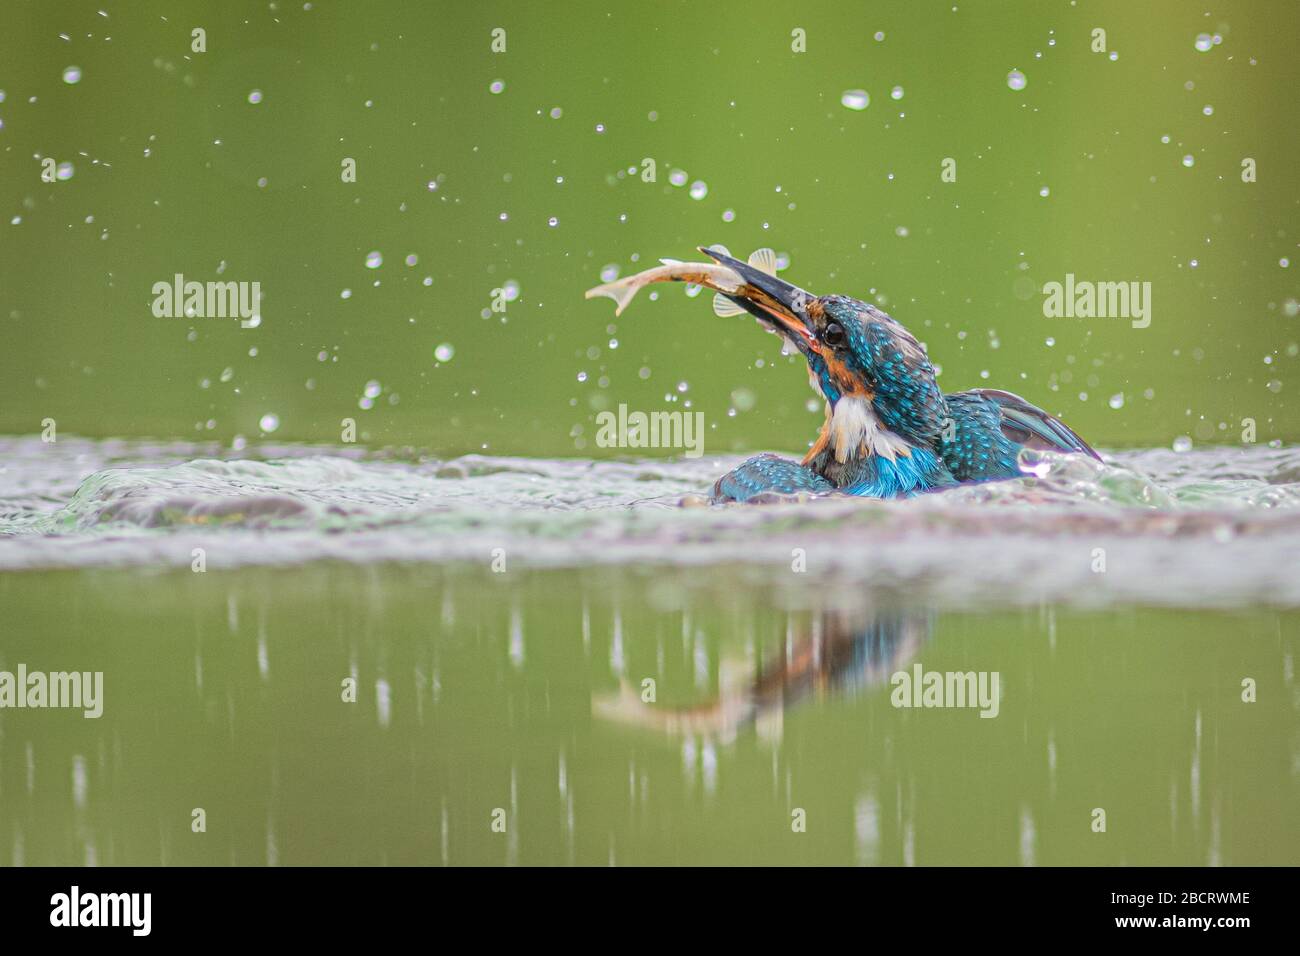 Tomado al nivel del agua. Un rey pescador macho emerge del agua con un minnow en su pico Foto de stock